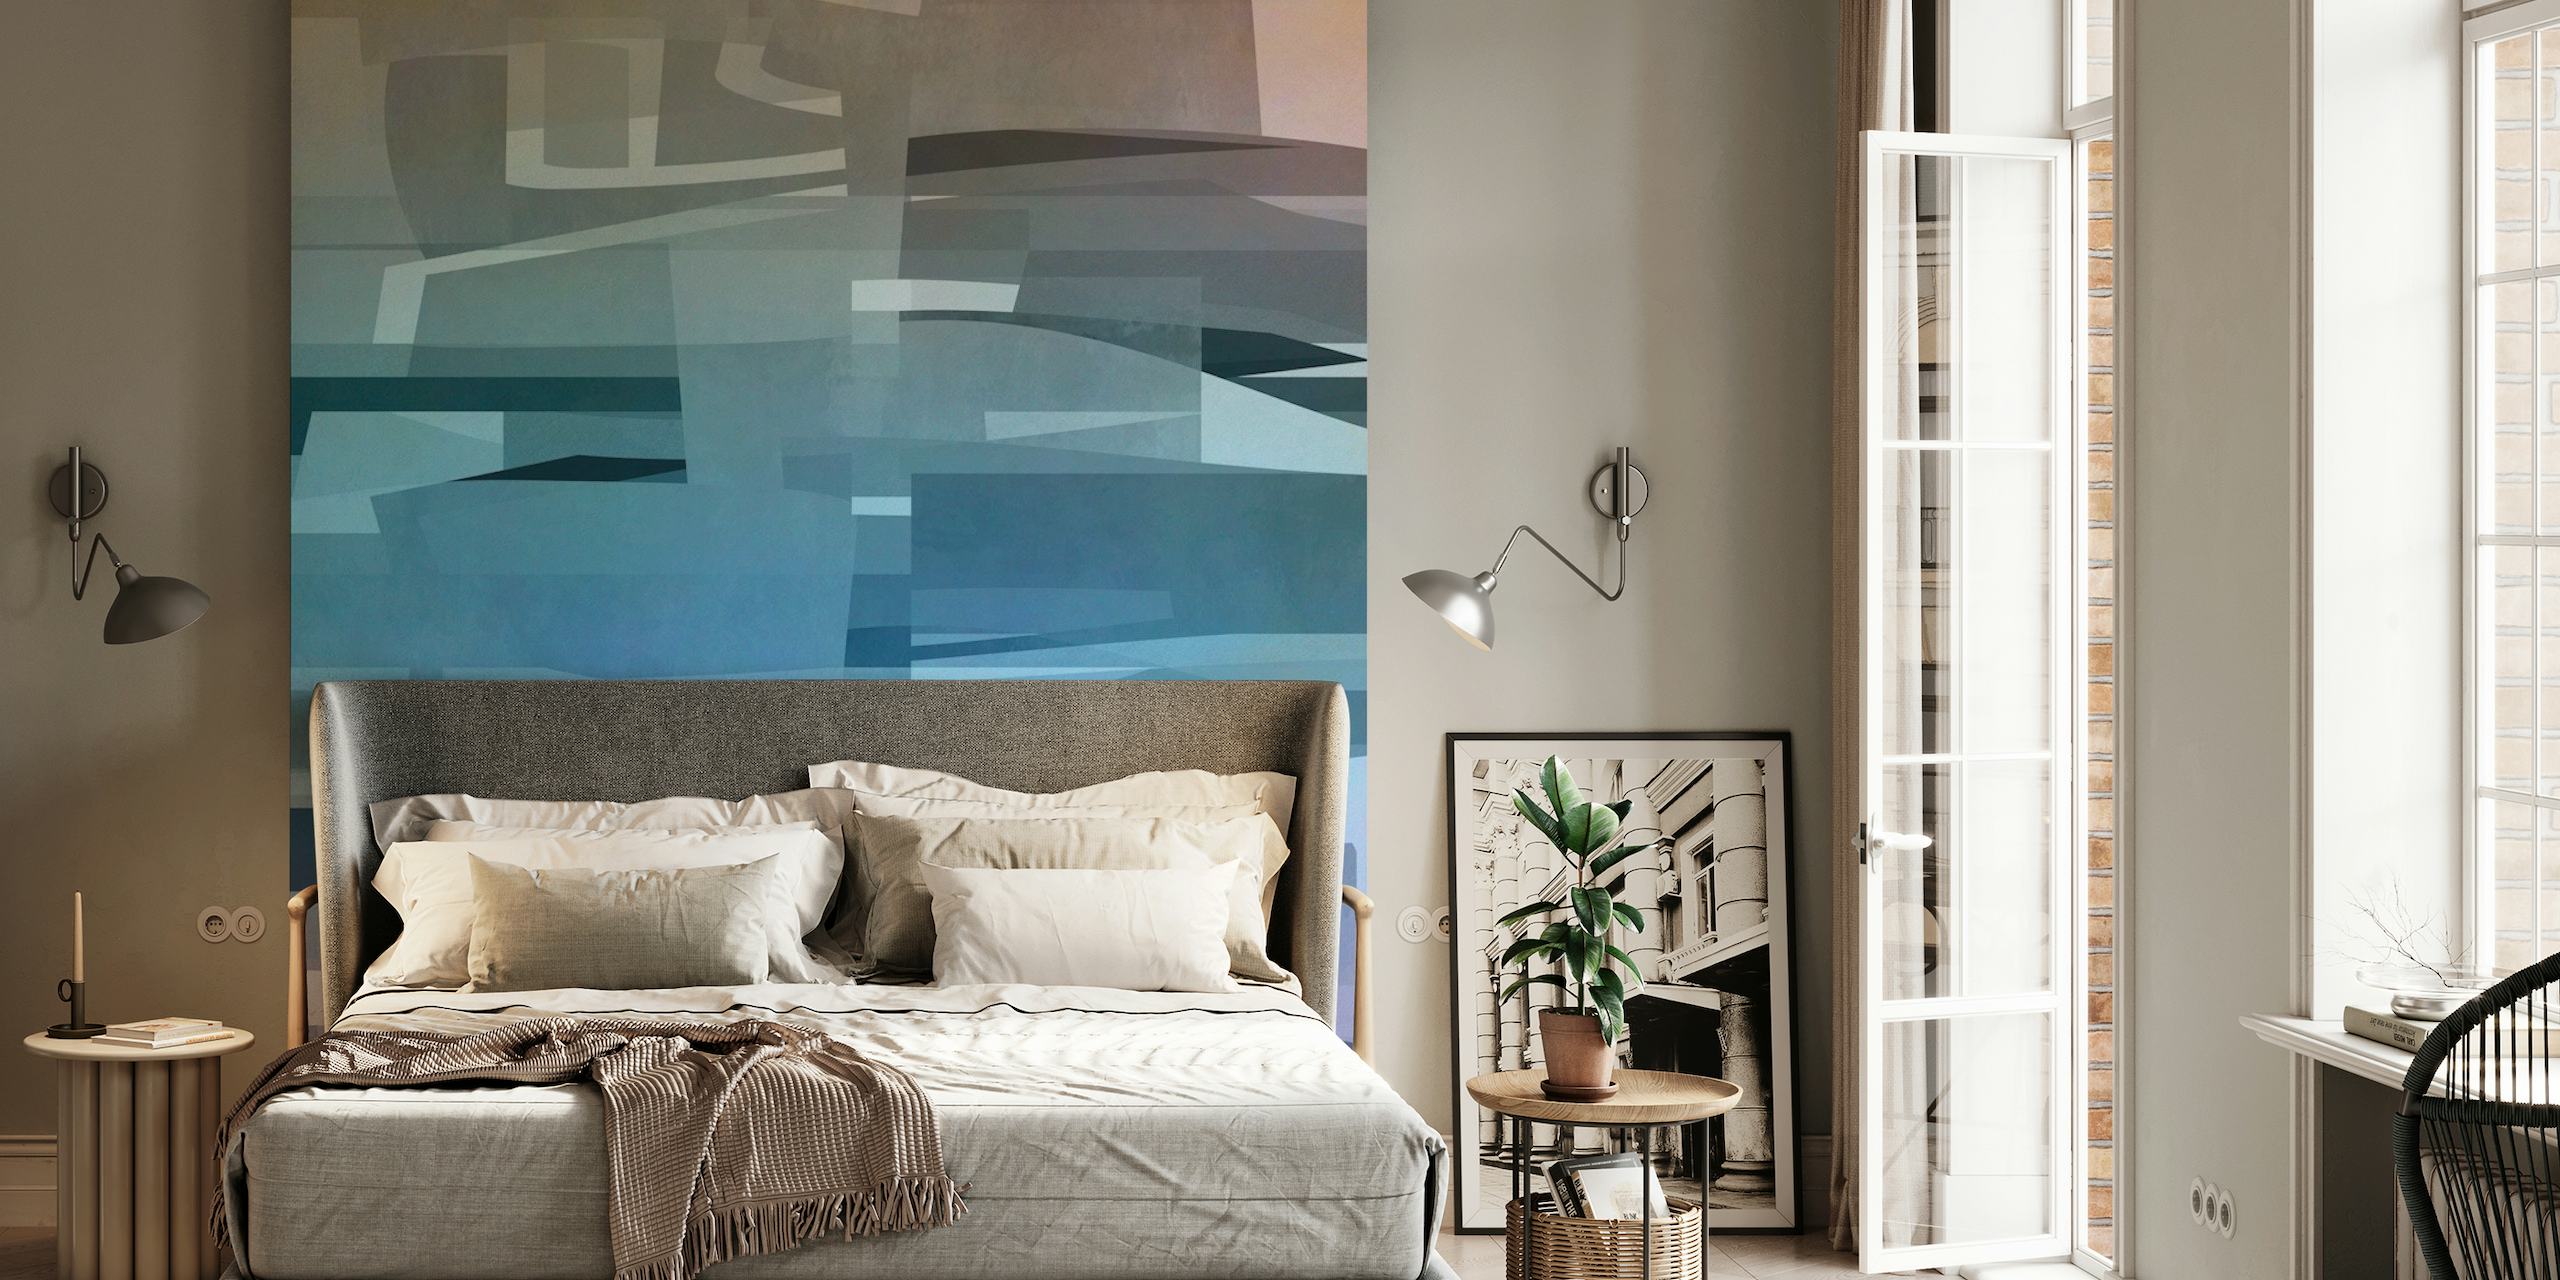 Abstract fotobehang in stedelijke stijl in blauw- en grijstinten met geometrische vormen